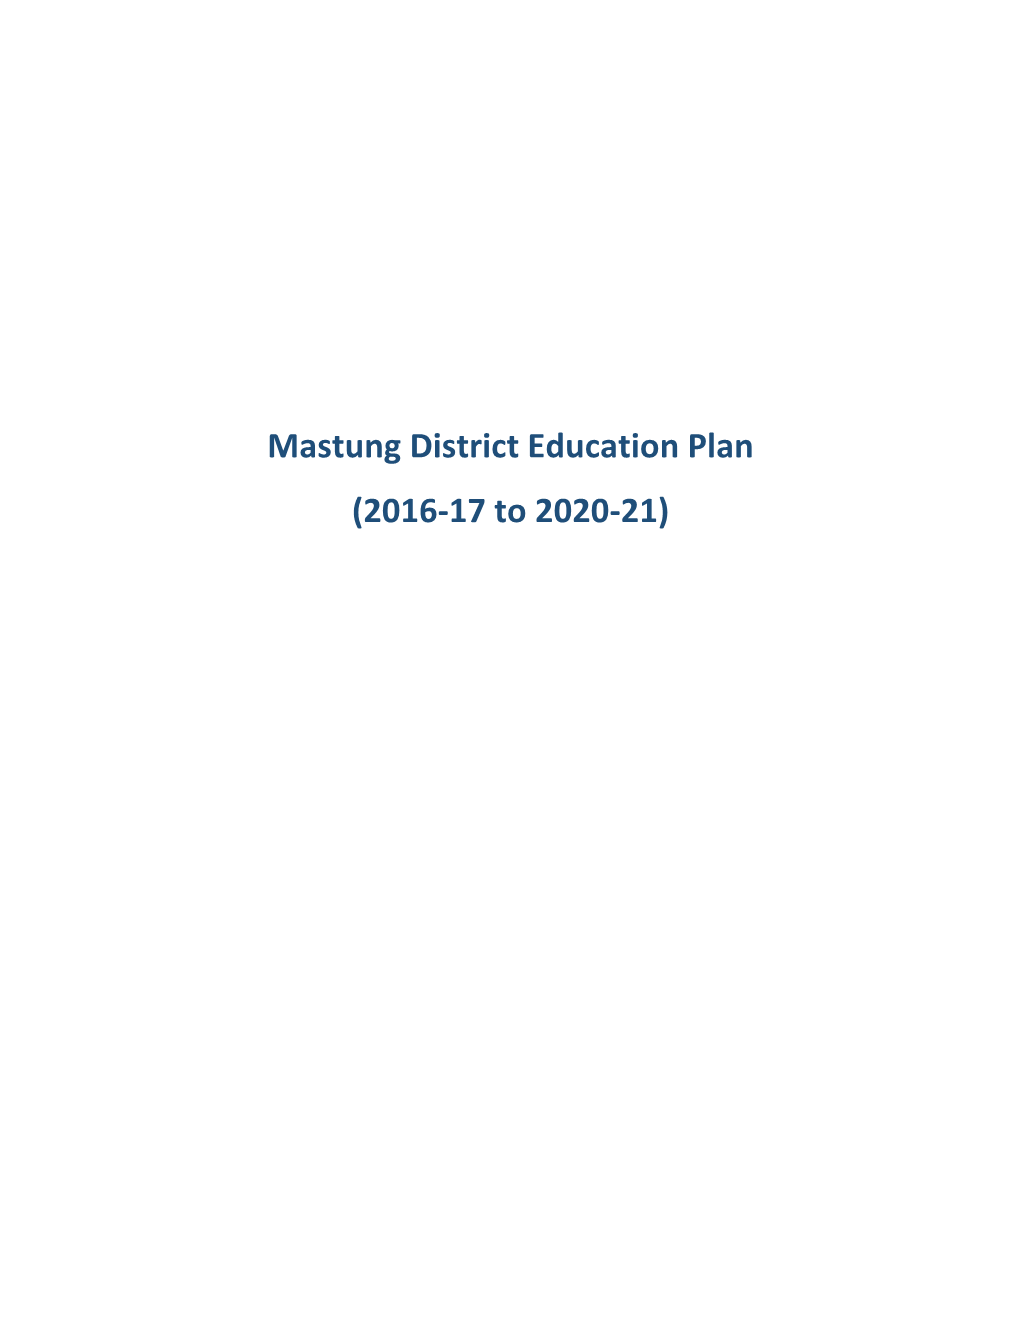 Mastung District Education Plan (2016-17 to 2020-21)